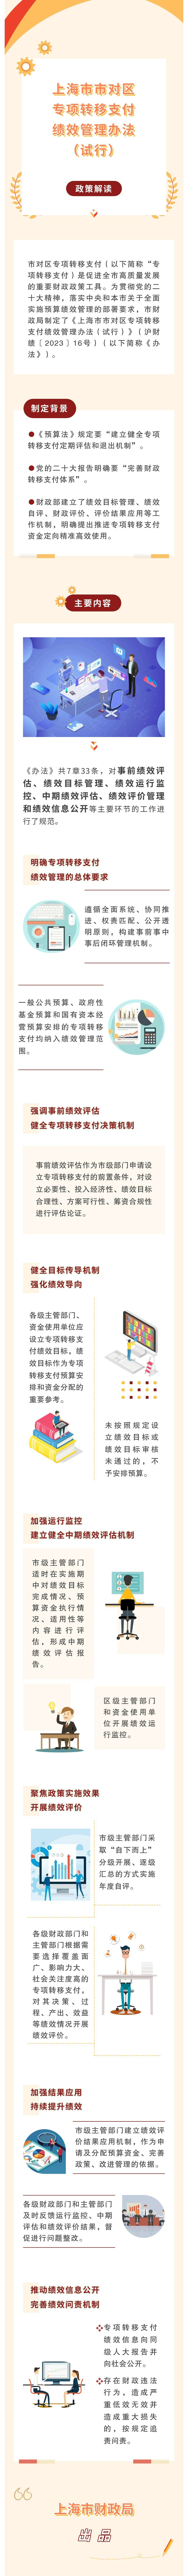 《上海市市对区专项转移支付绩效管理办法（试行）》 政策解读.jpg